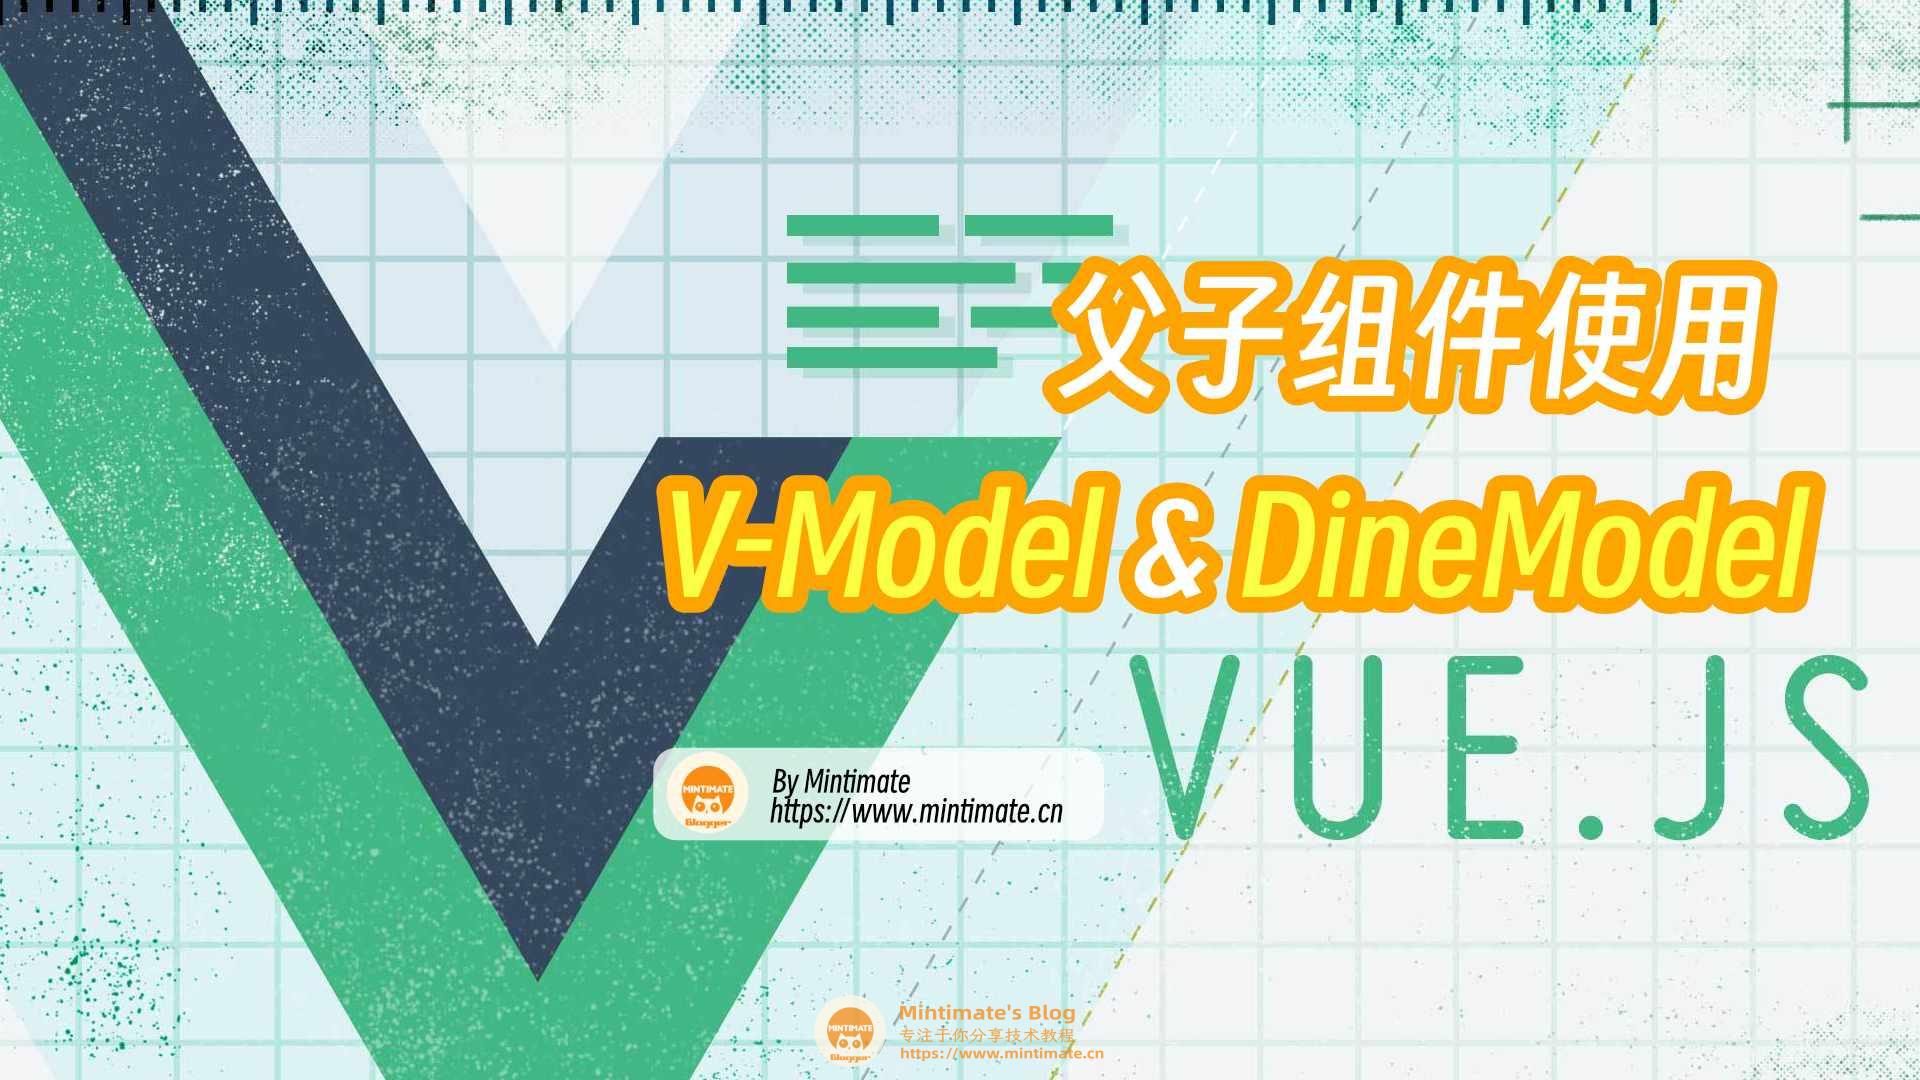 Vue父子组件间双向数据绑定：v-model与dineModel详解